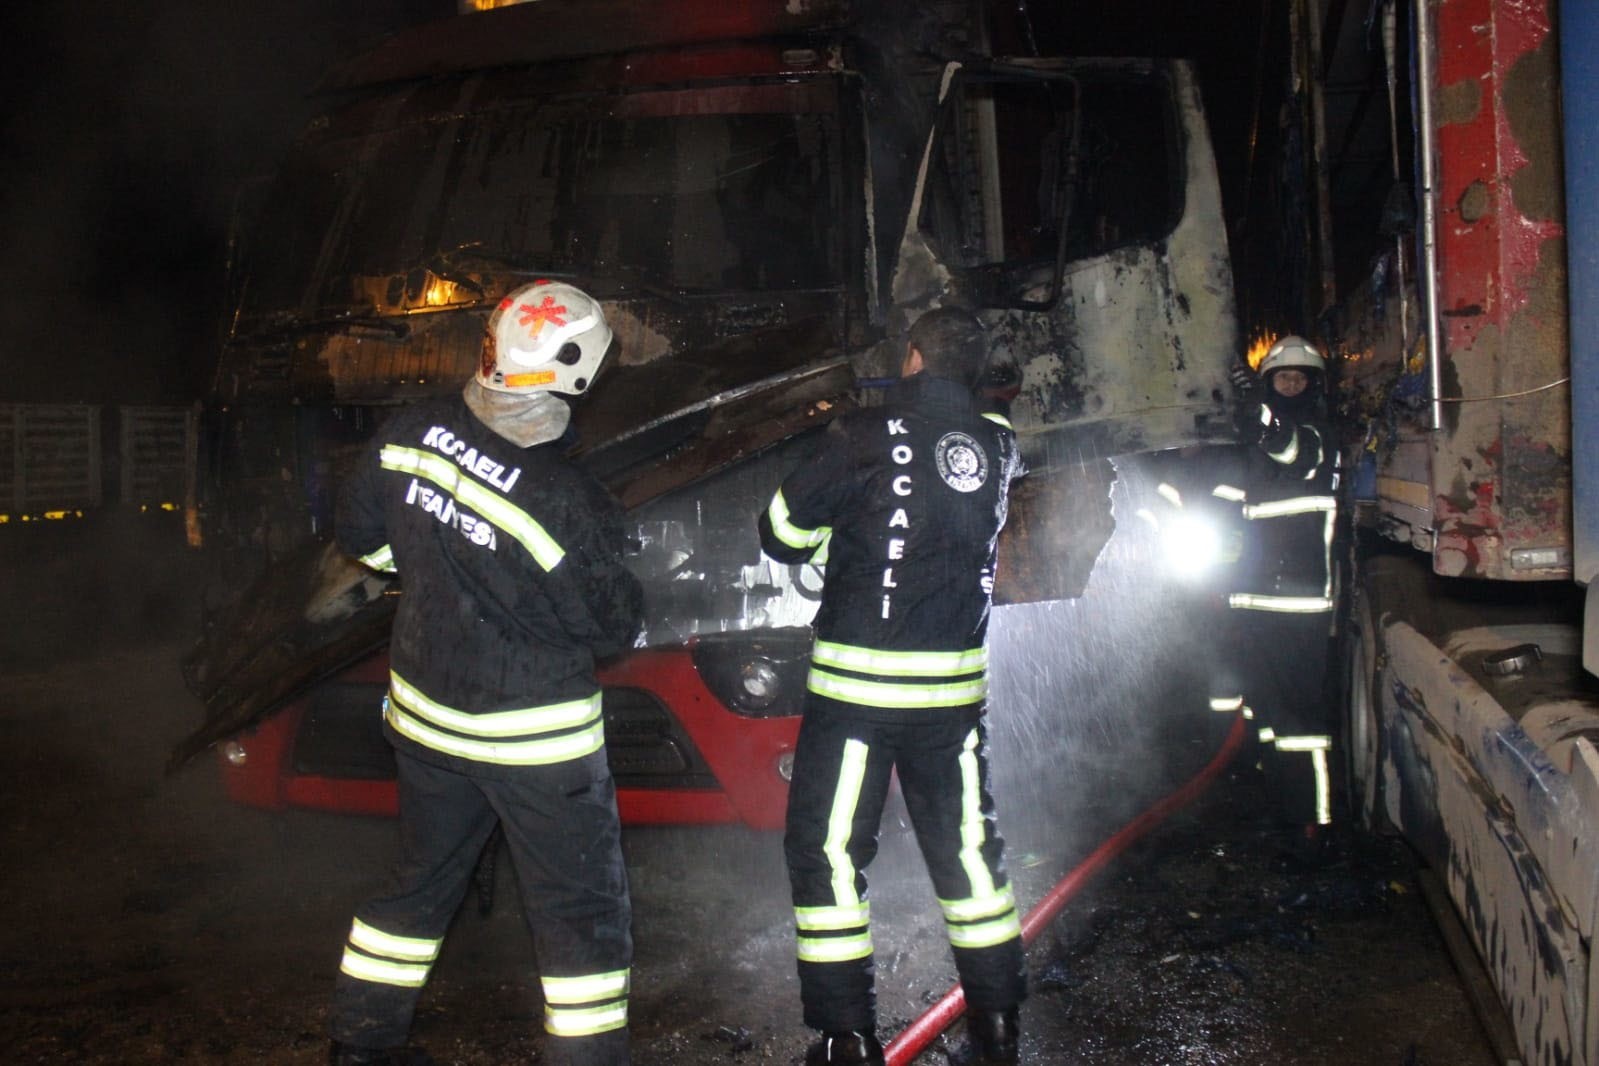 Tırın kupası alev alev yandı, vatandaşlar patlamasından korktu #kocaeli